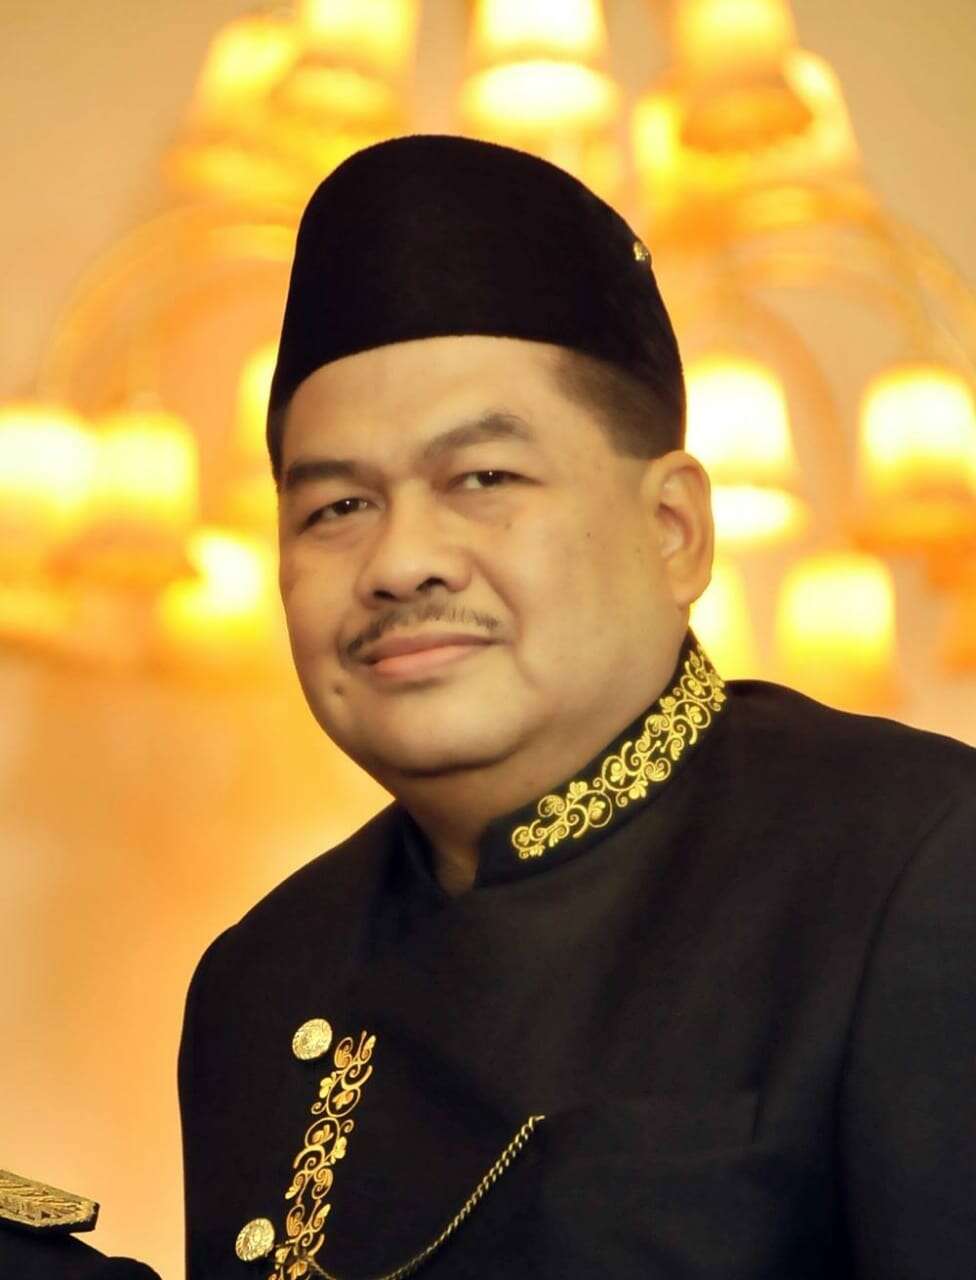 Sultan Kutai Dukung Ambil Alih Saham 39 Persen